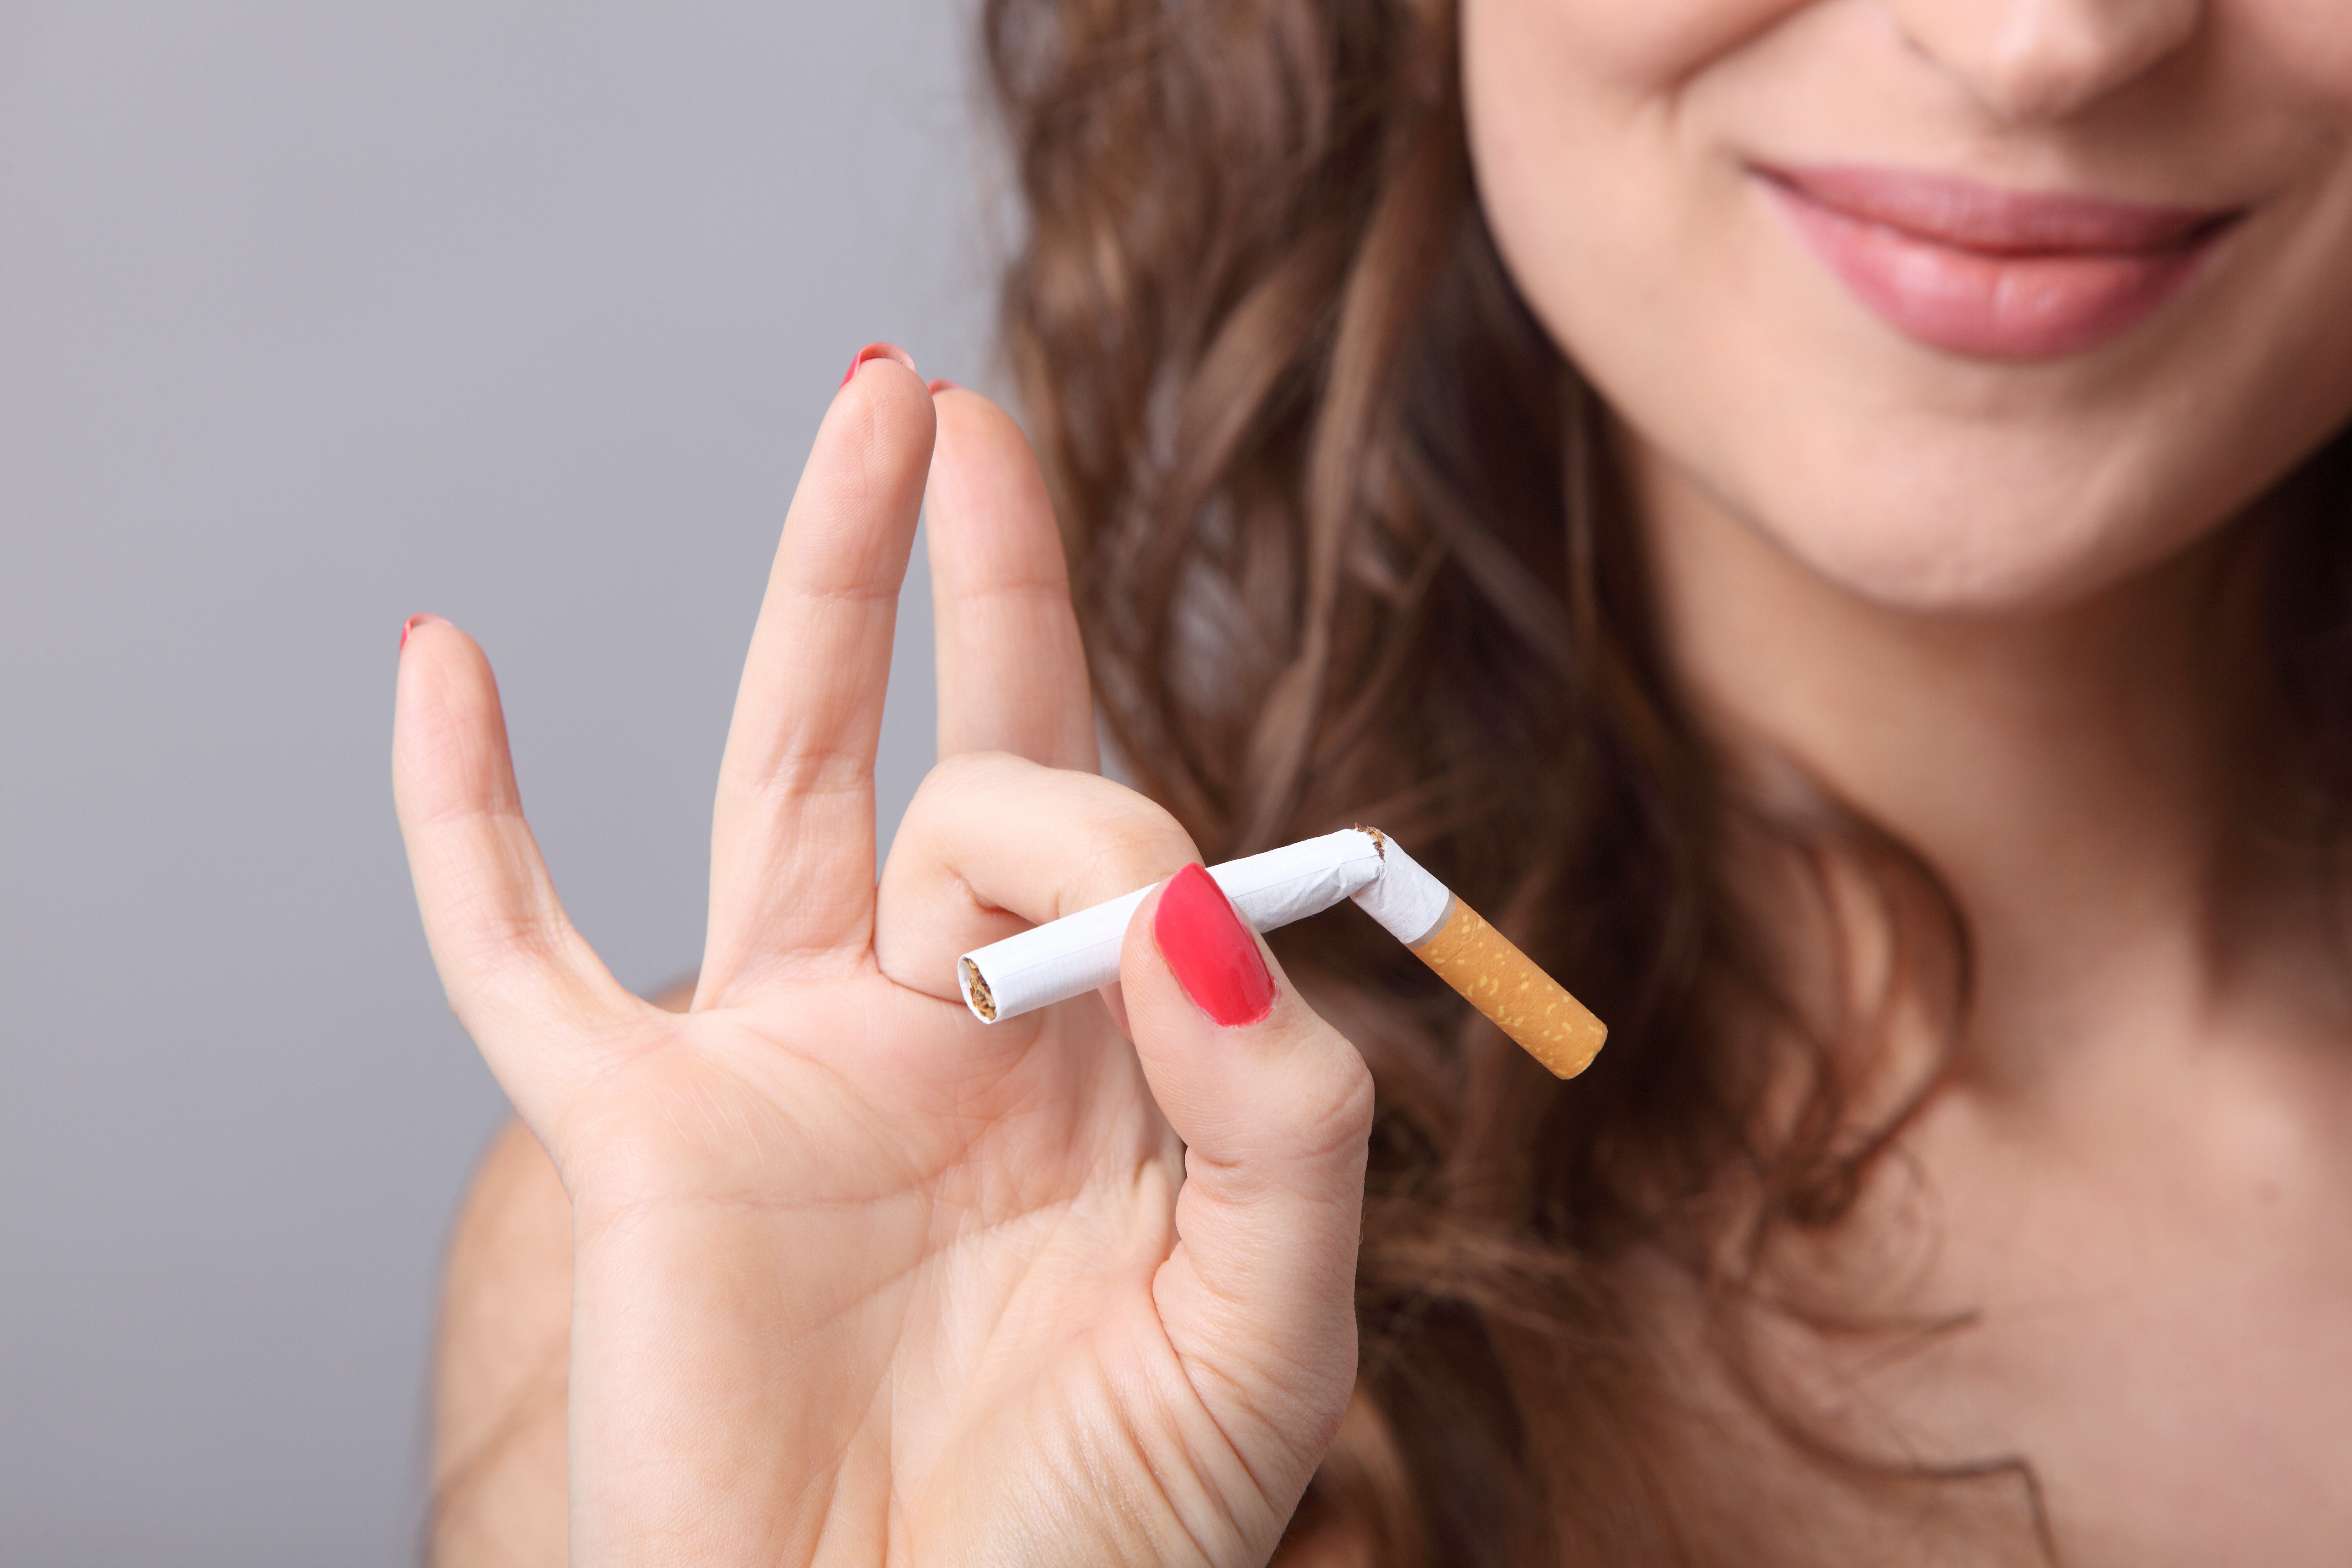 Frauen Fällt Das Rauchen Aufgeben Schwerer Als Männern Heilpraxis